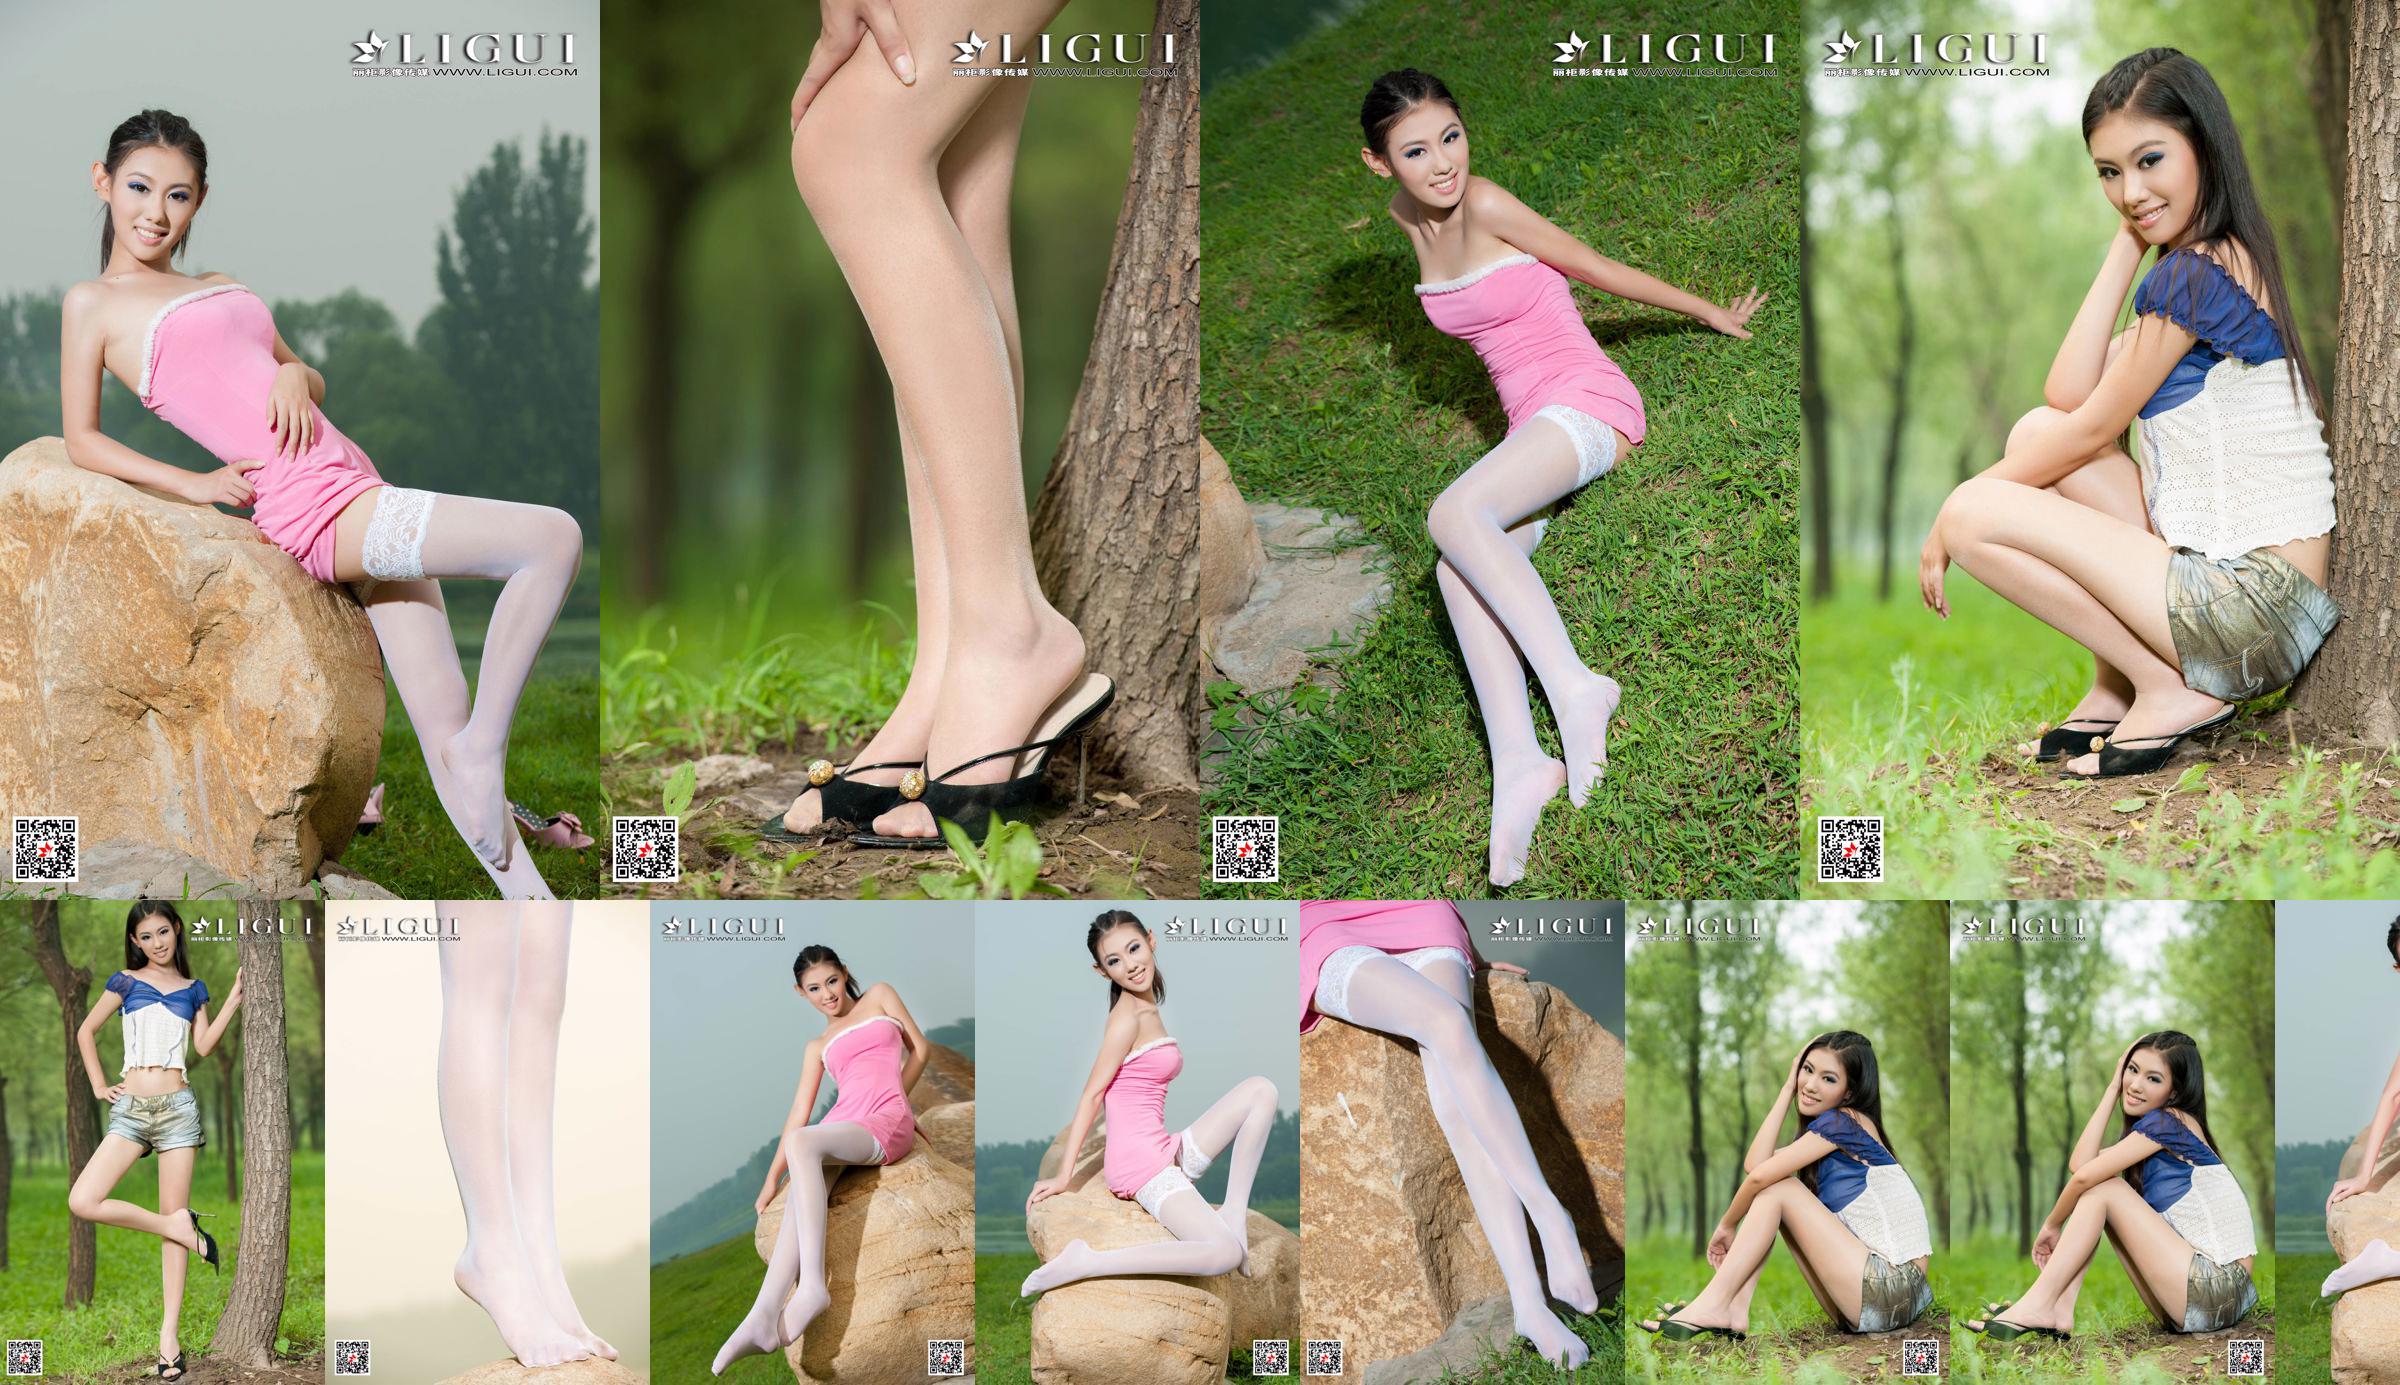 [丽柜Ligui] Model Wei Ling "Long Leg Girl" Beautiful legs No.3b18f8 Page 1